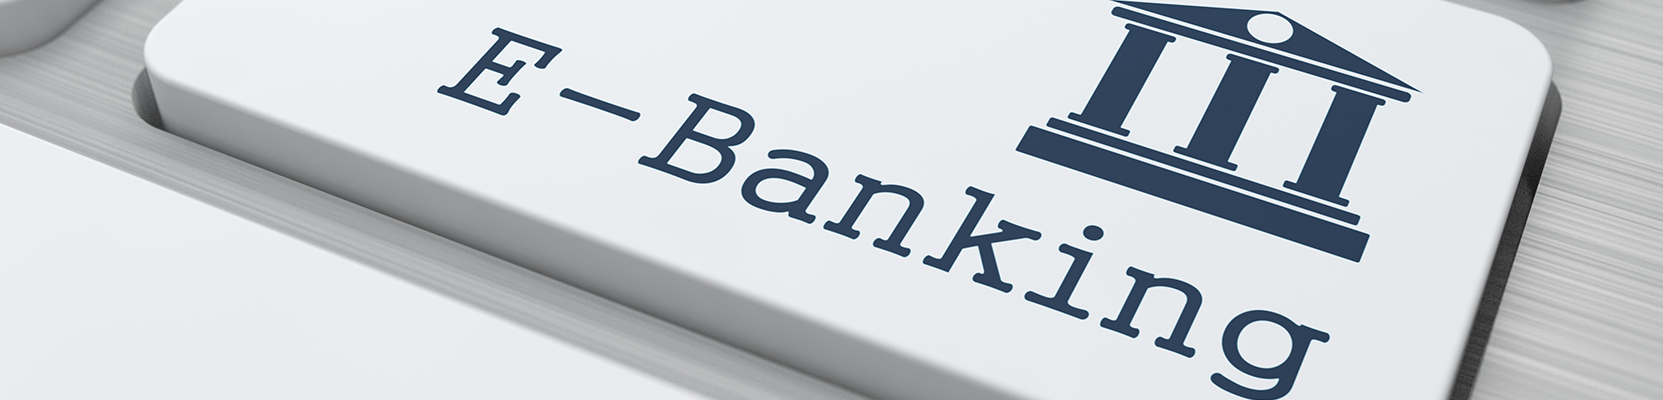 Ngân hàng điện tử là gì? Các dịch vụ của ngân hàng điện tử hiện nay